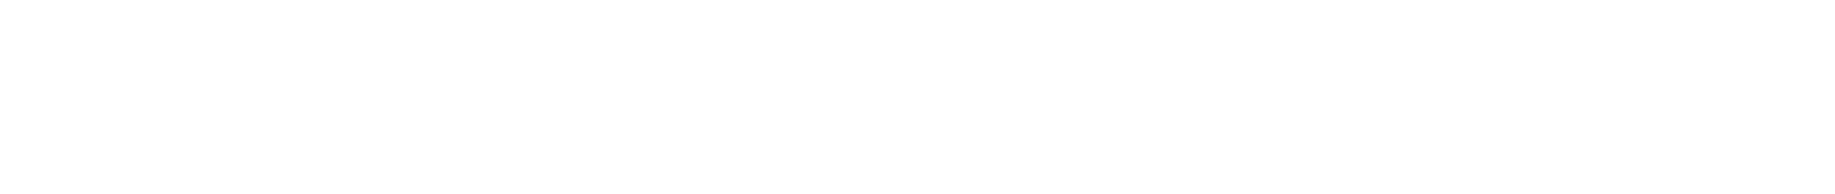 McDavid x Myovolt® Logo Lockup